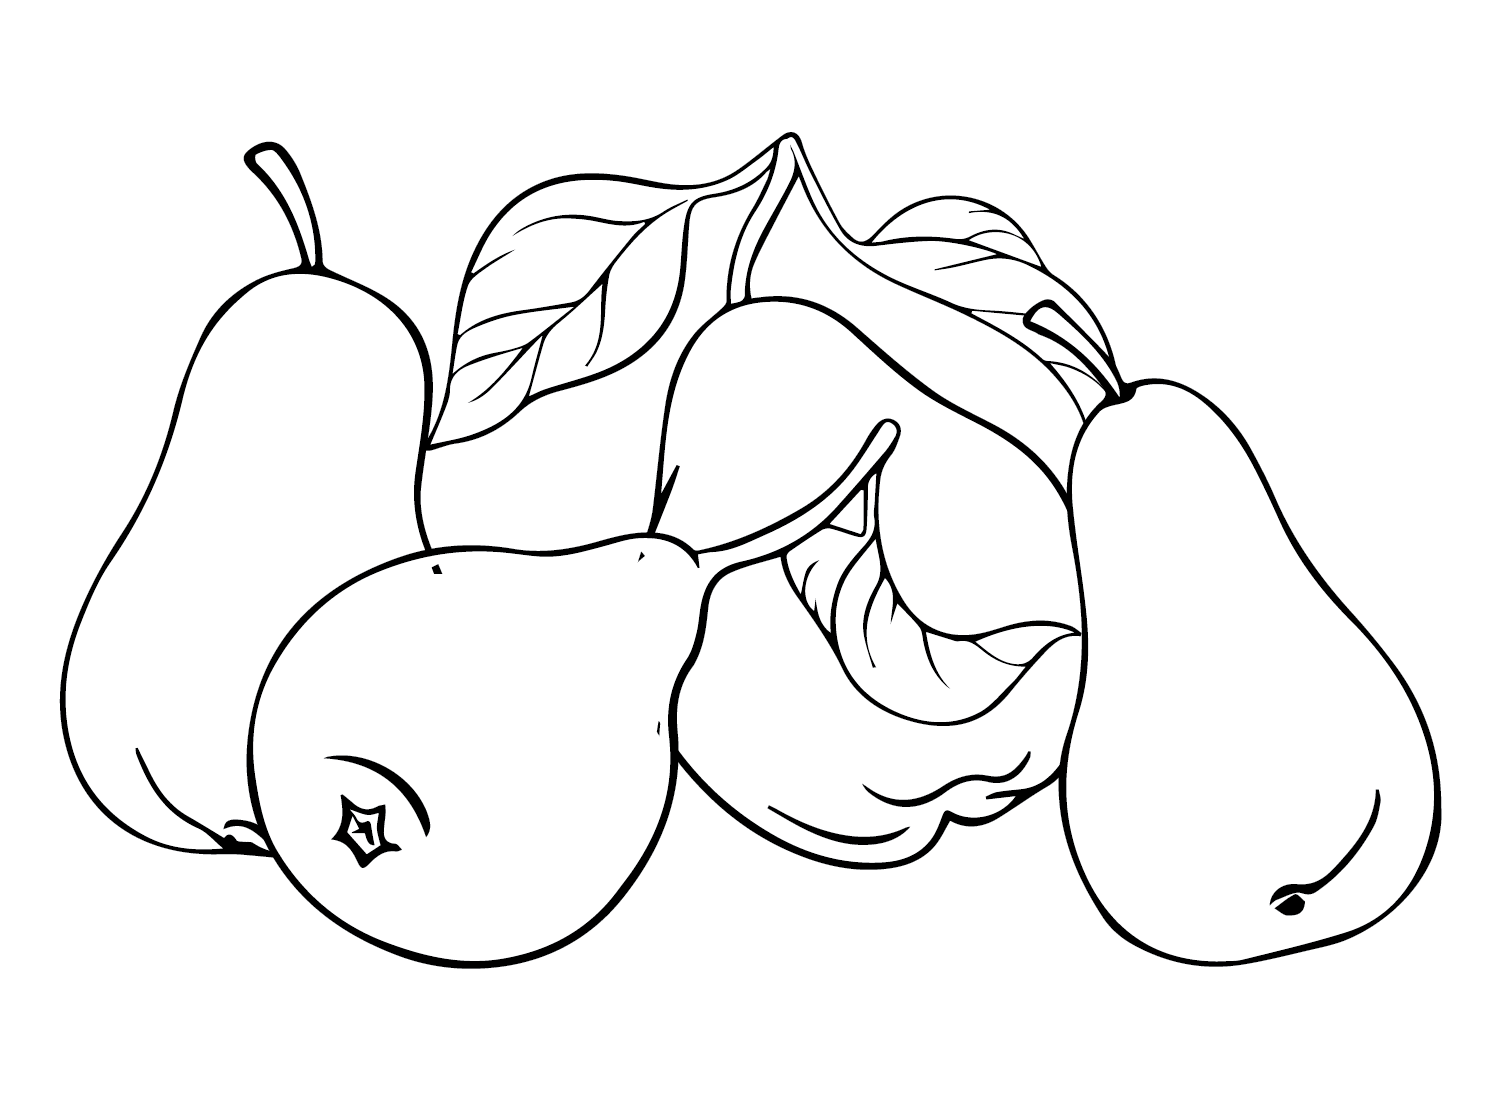 Peras libres de peras